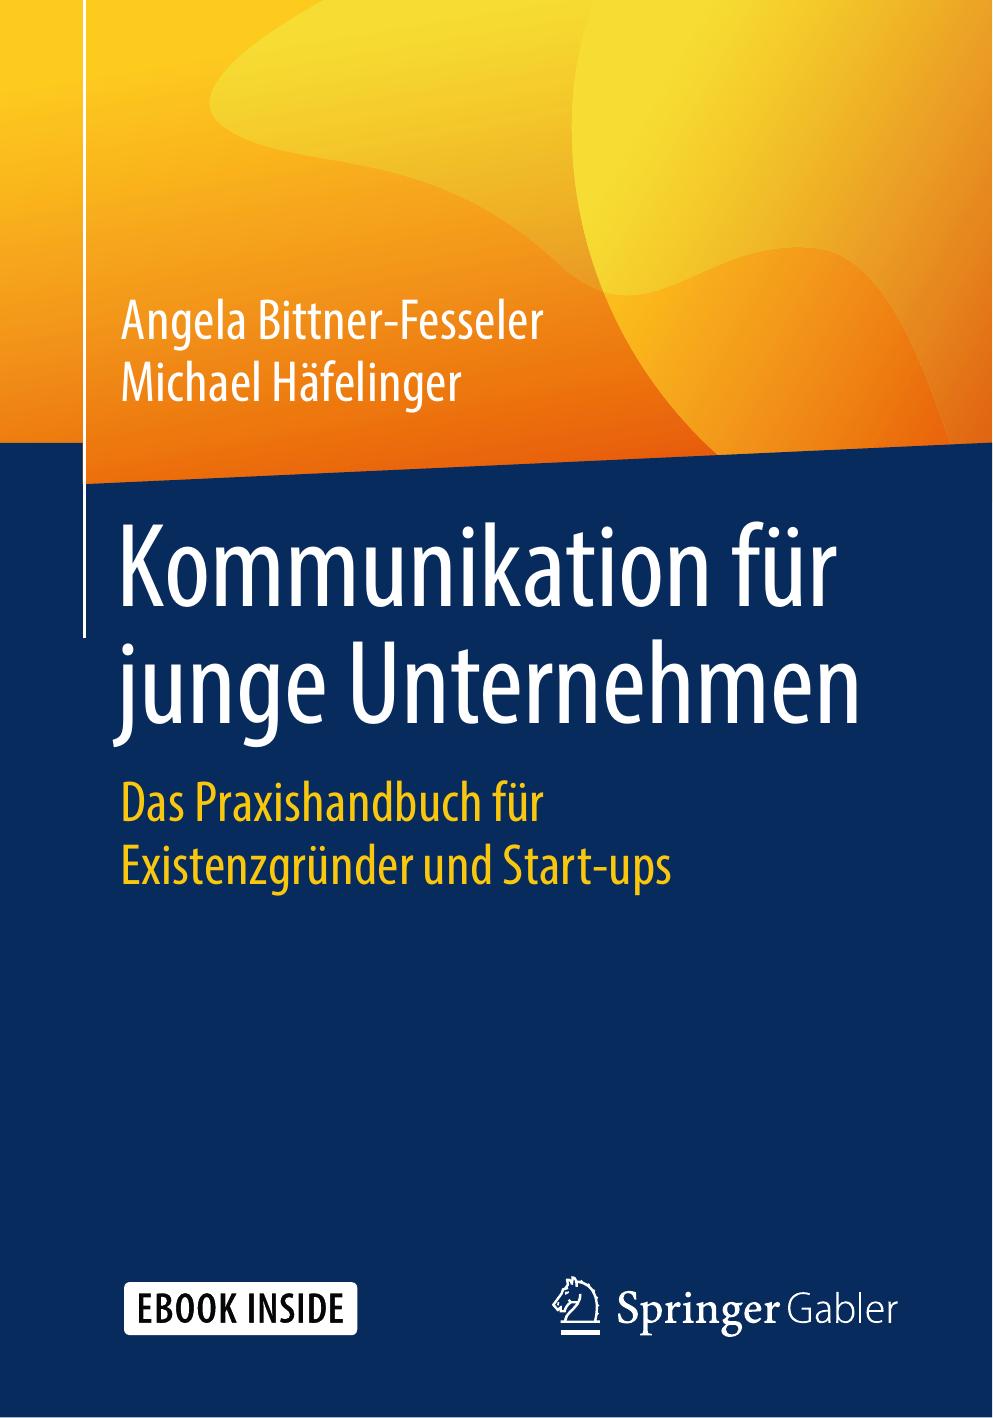 Kommunikation für junge Unternehmen: Das Praxishandbuch für Existenzgründer und Start-ups